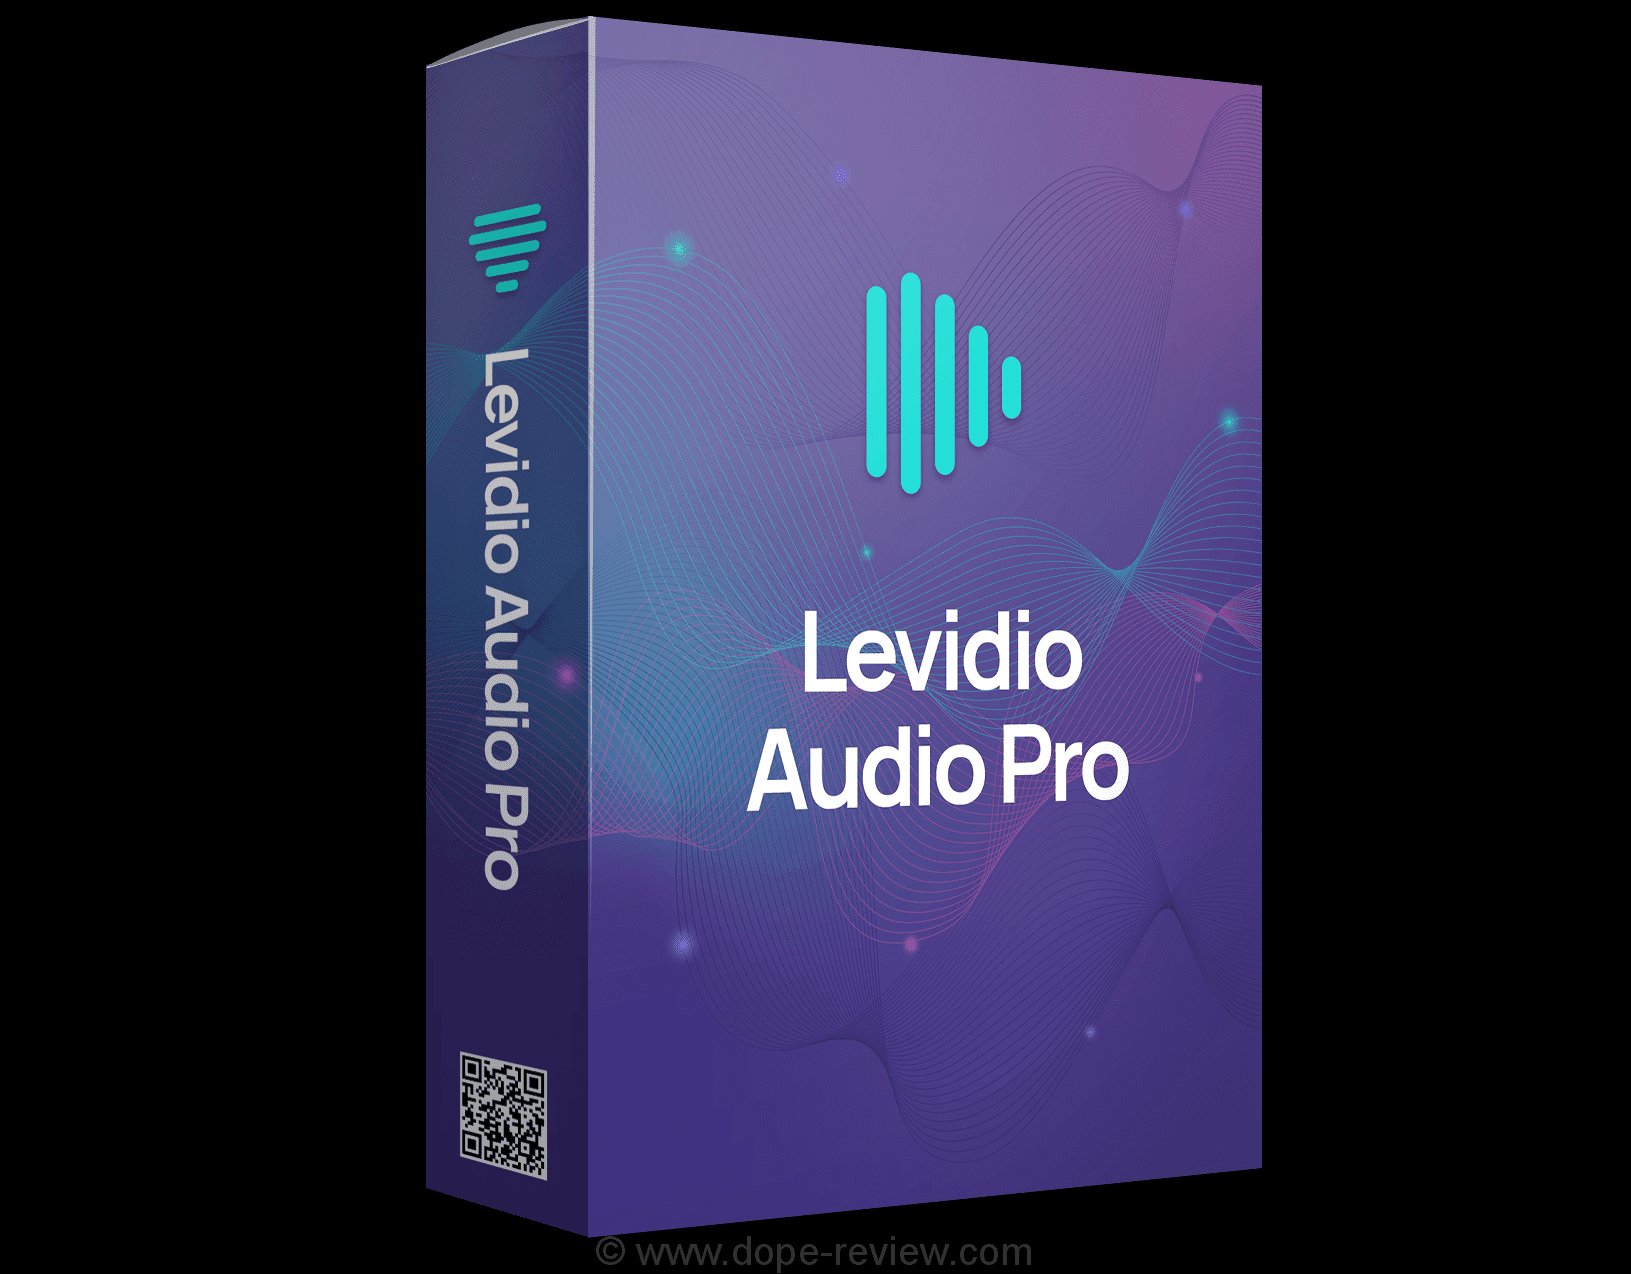 Levidio Audio Pro Review